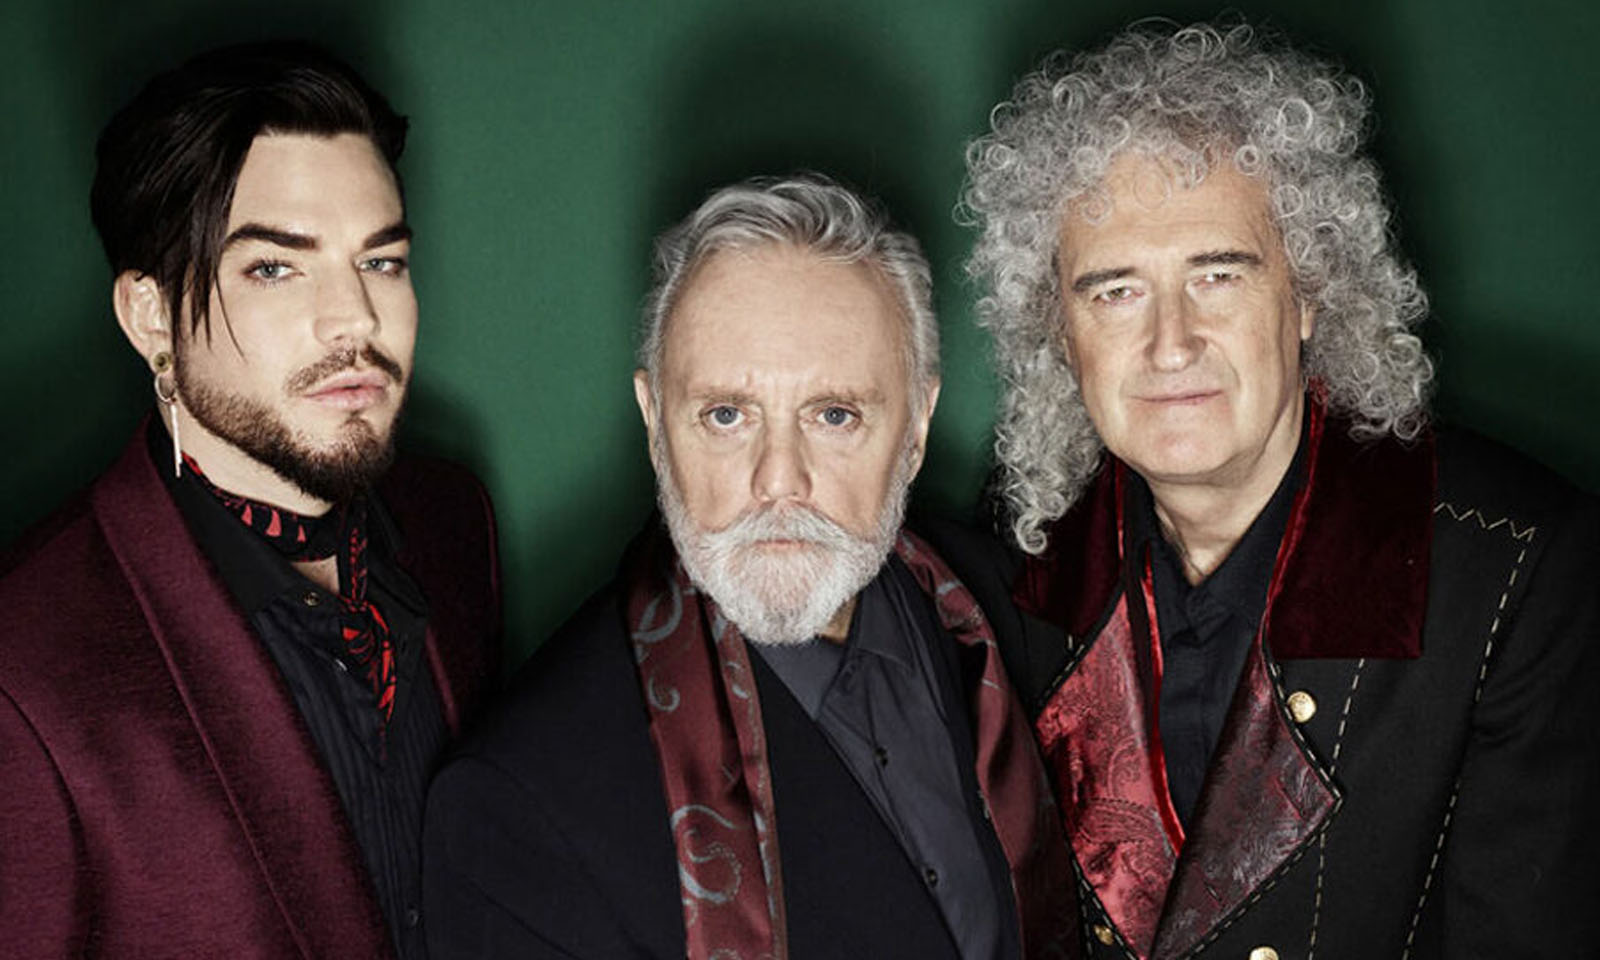 Queen + Adam Lambert serão headliner do Rock in Rio de 2021, segundo jornalista